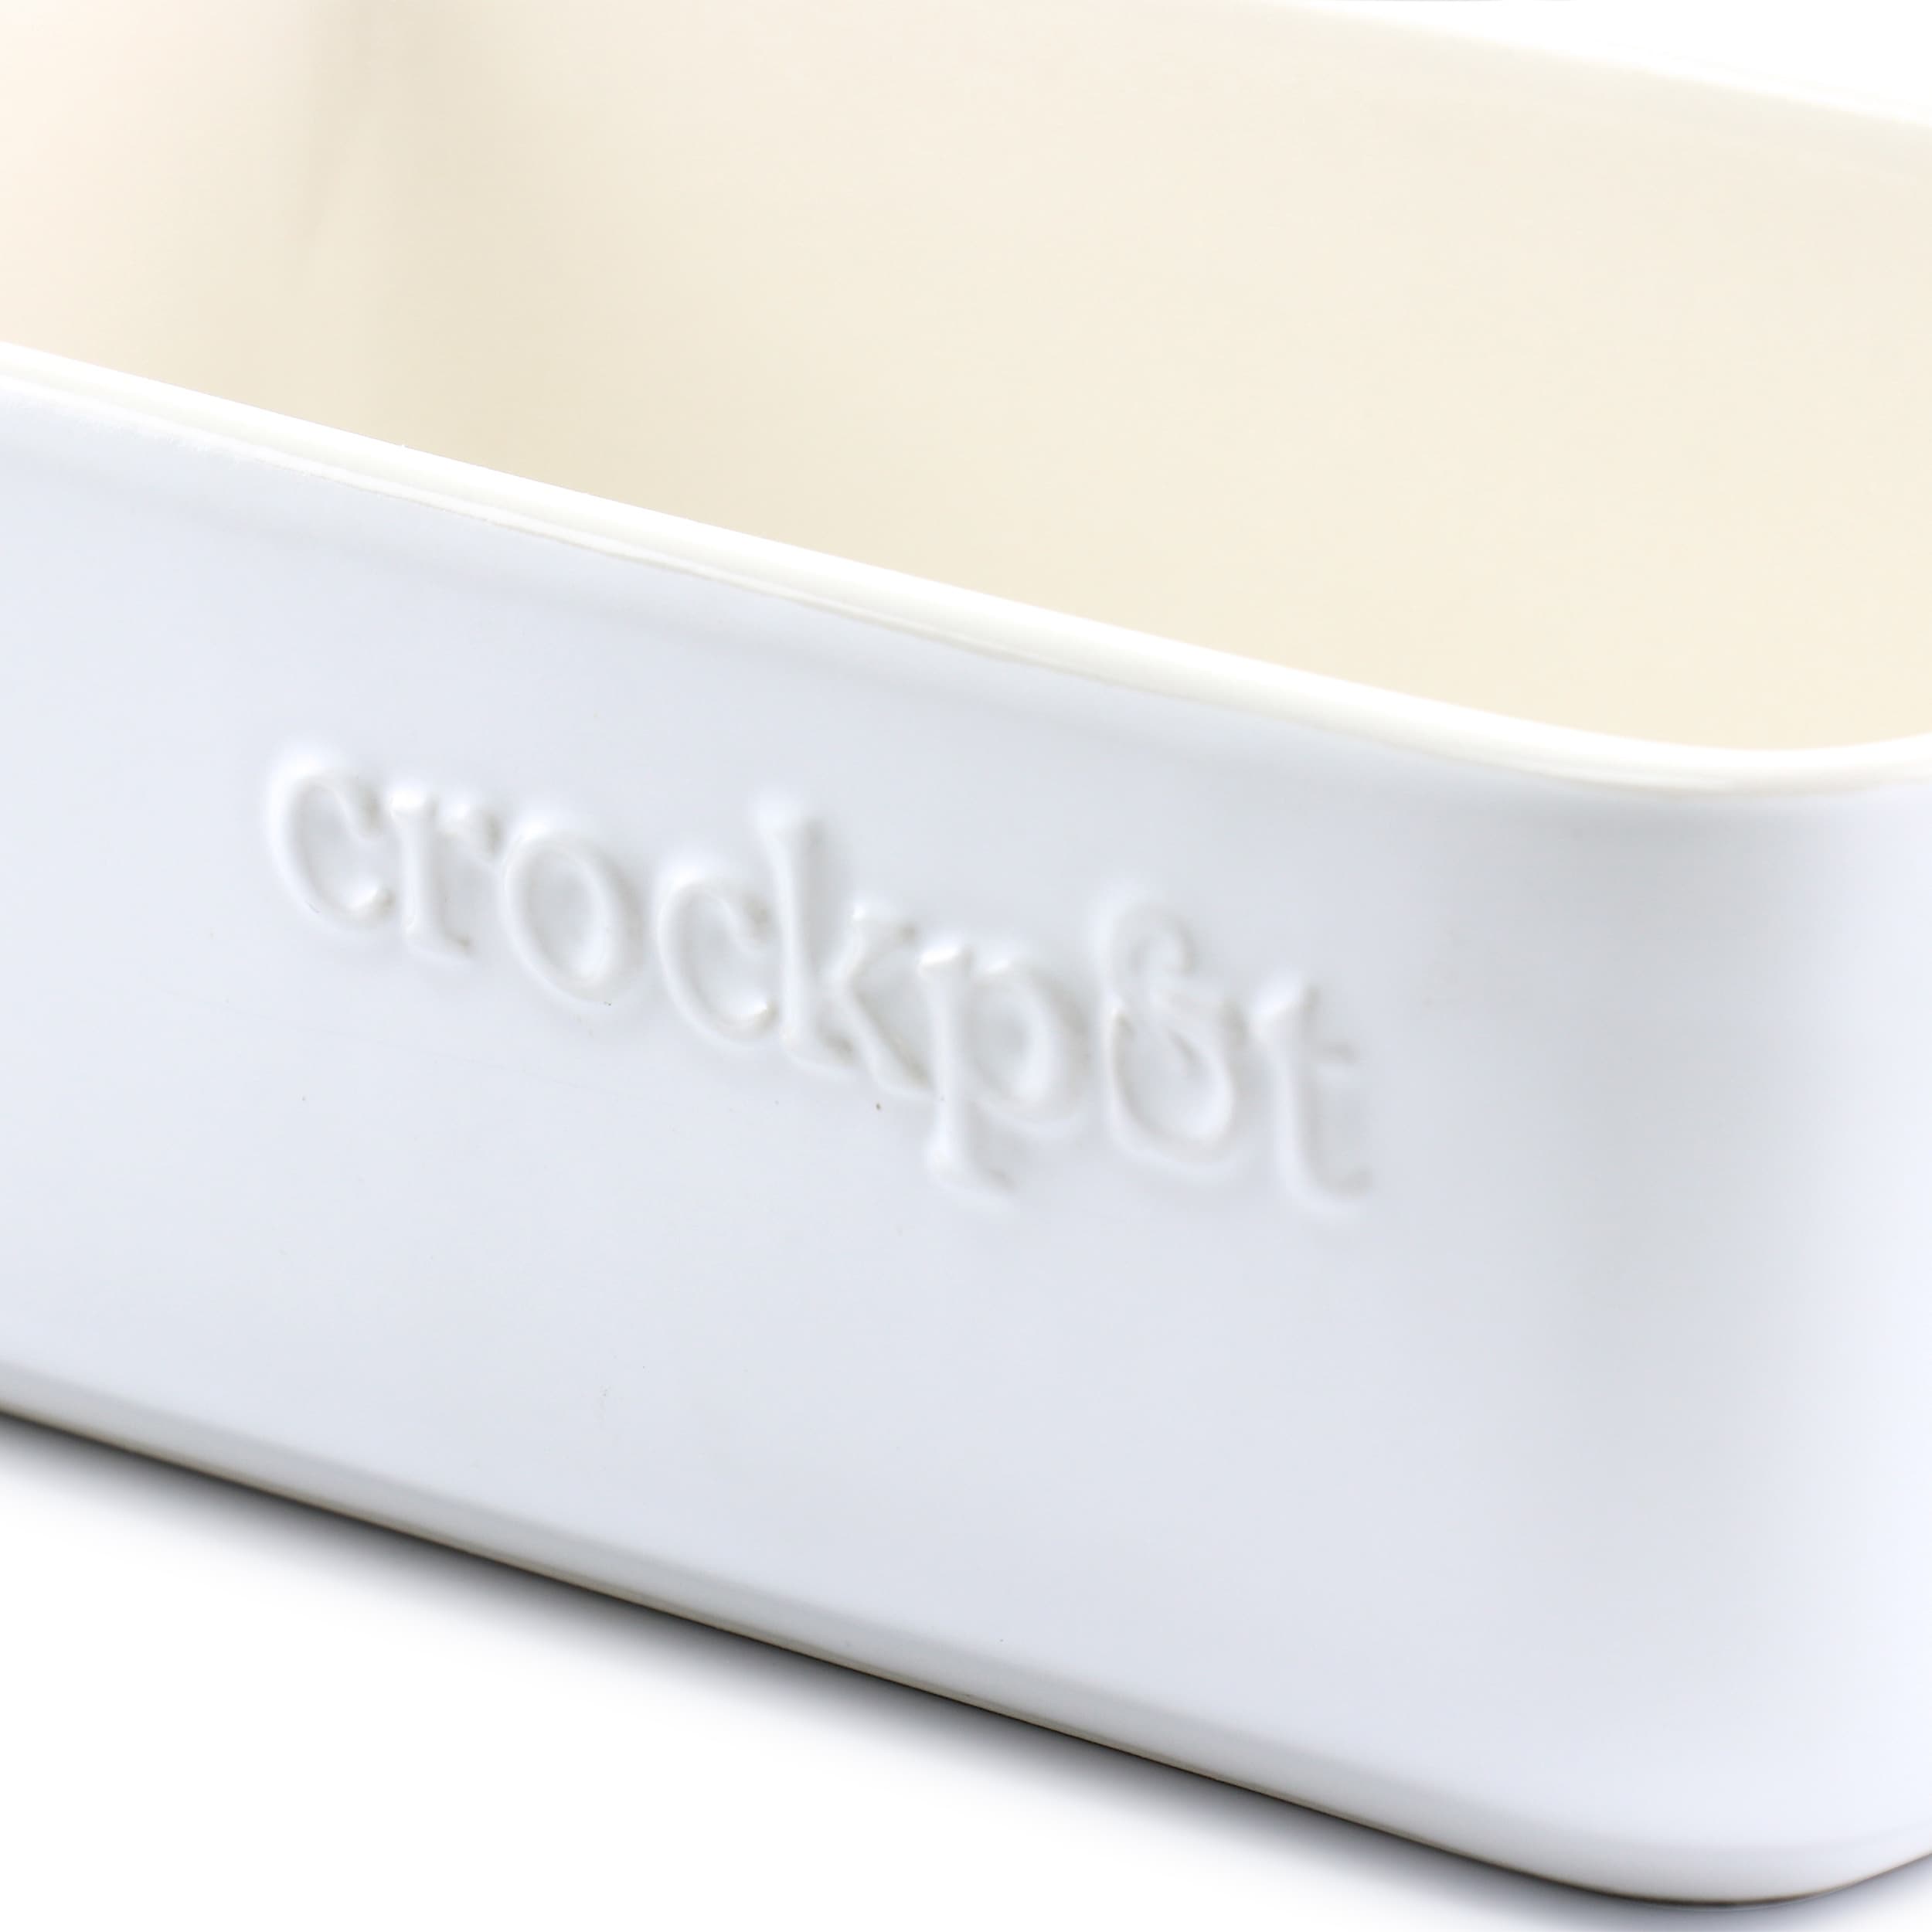 Crock-Pot Artisan 4 Quart Rectangular Stoneware Bake Pan in Cream